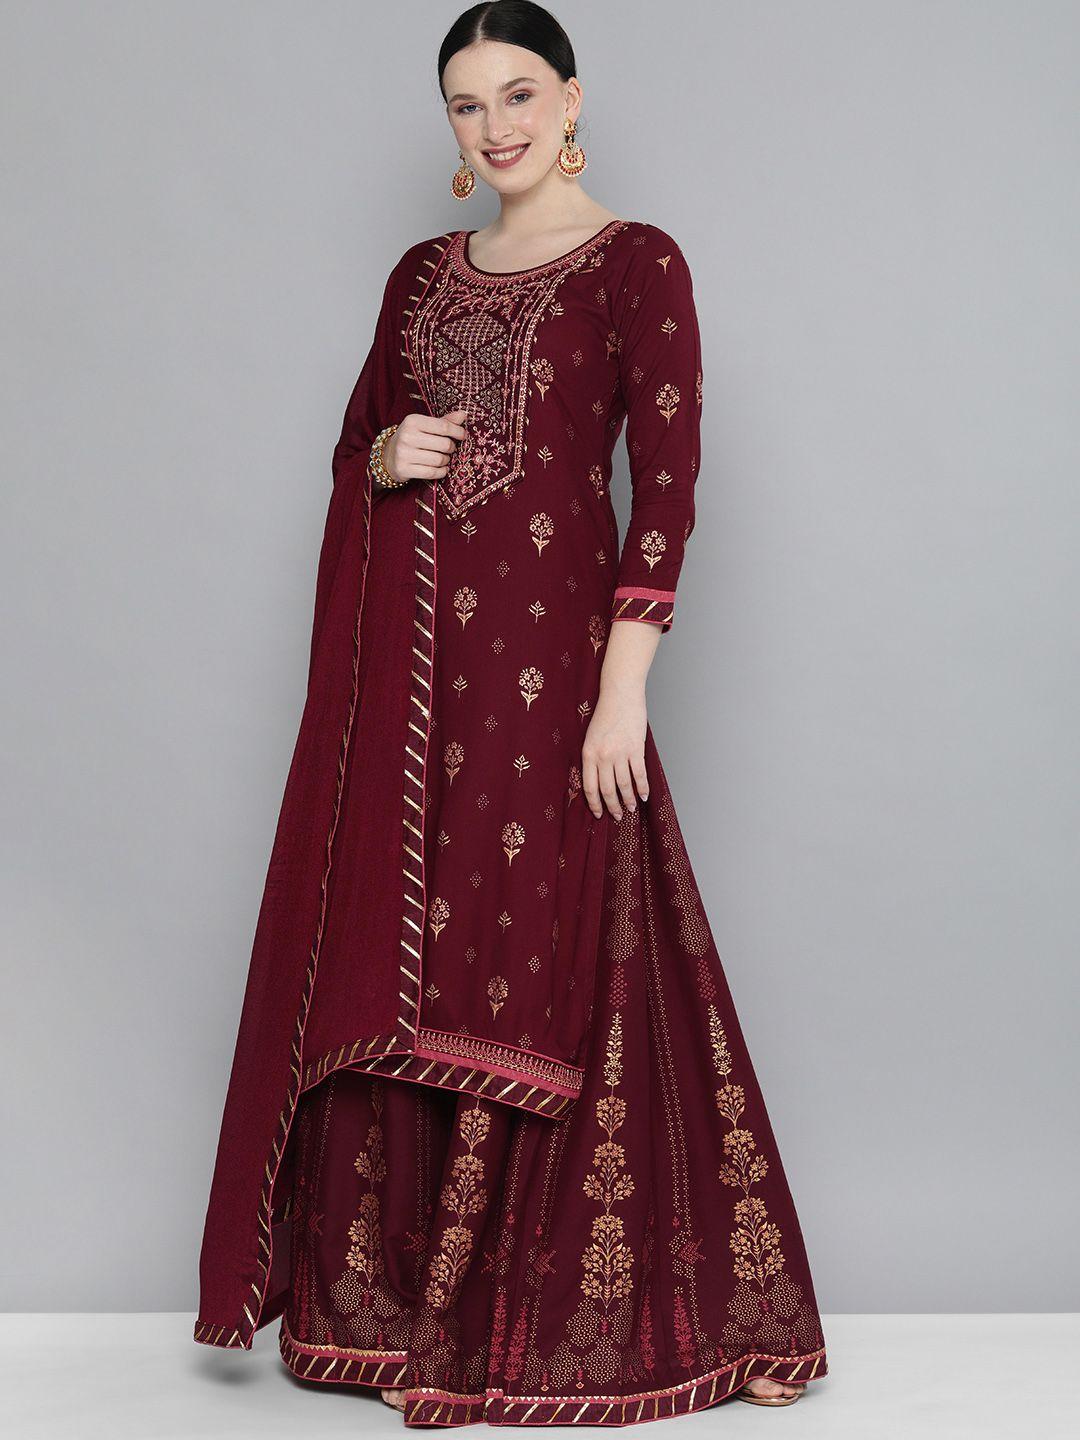 kvsfab-women-maroon-ethnic-motifs-regular-kurta-with-skirt-with-dupatta